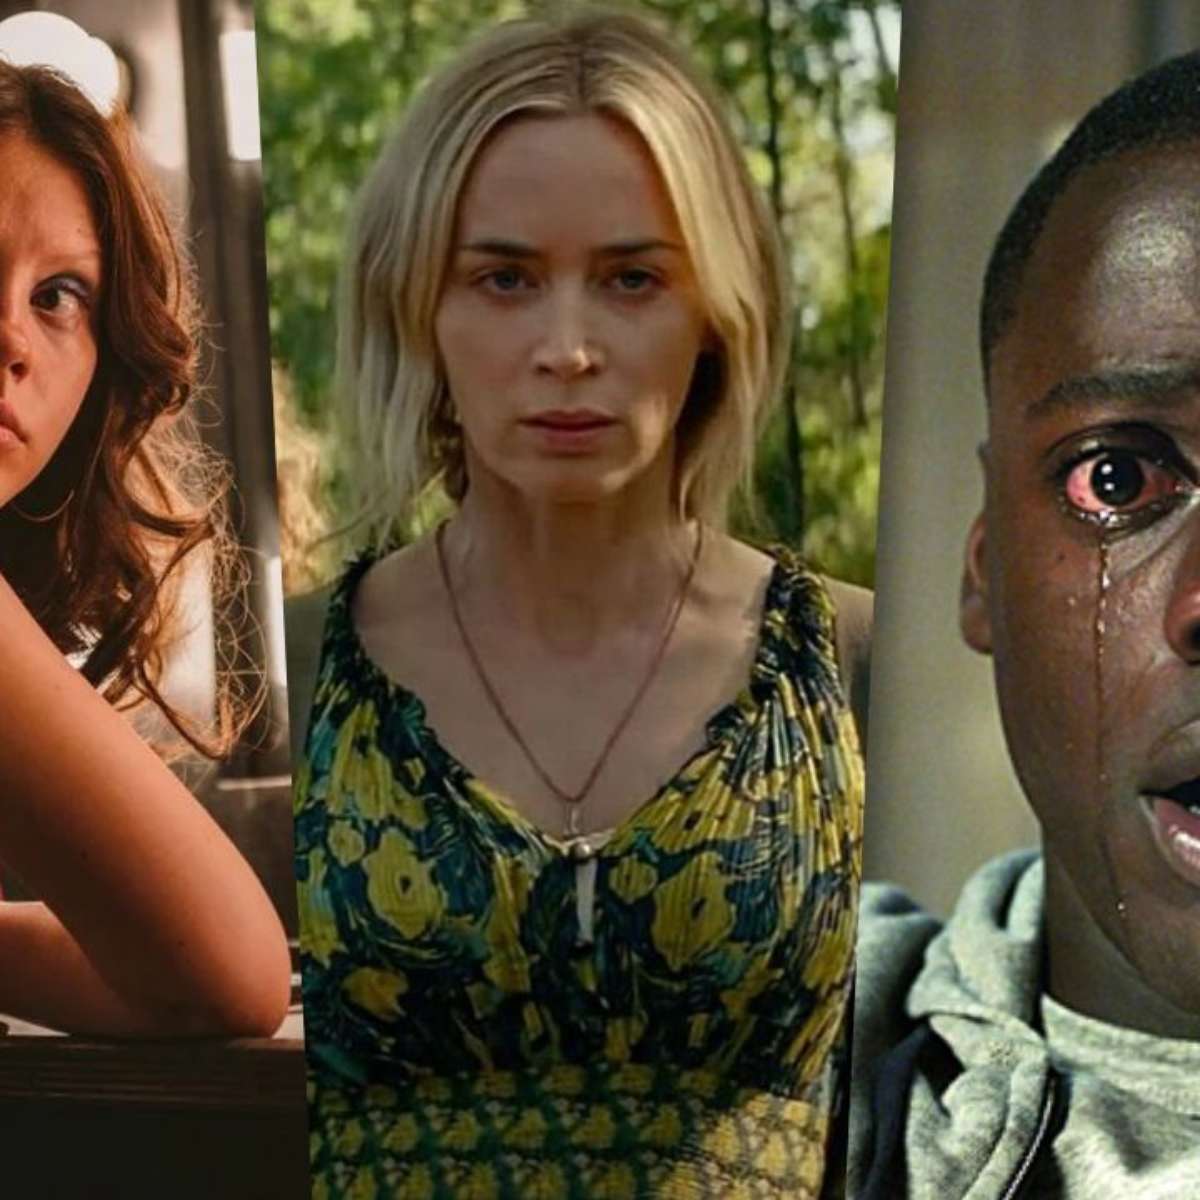 Os melhores filmes de terror de 2022, segundo o Rotten Tomatoes - Criada  por Daiana (daiana5686), Lista